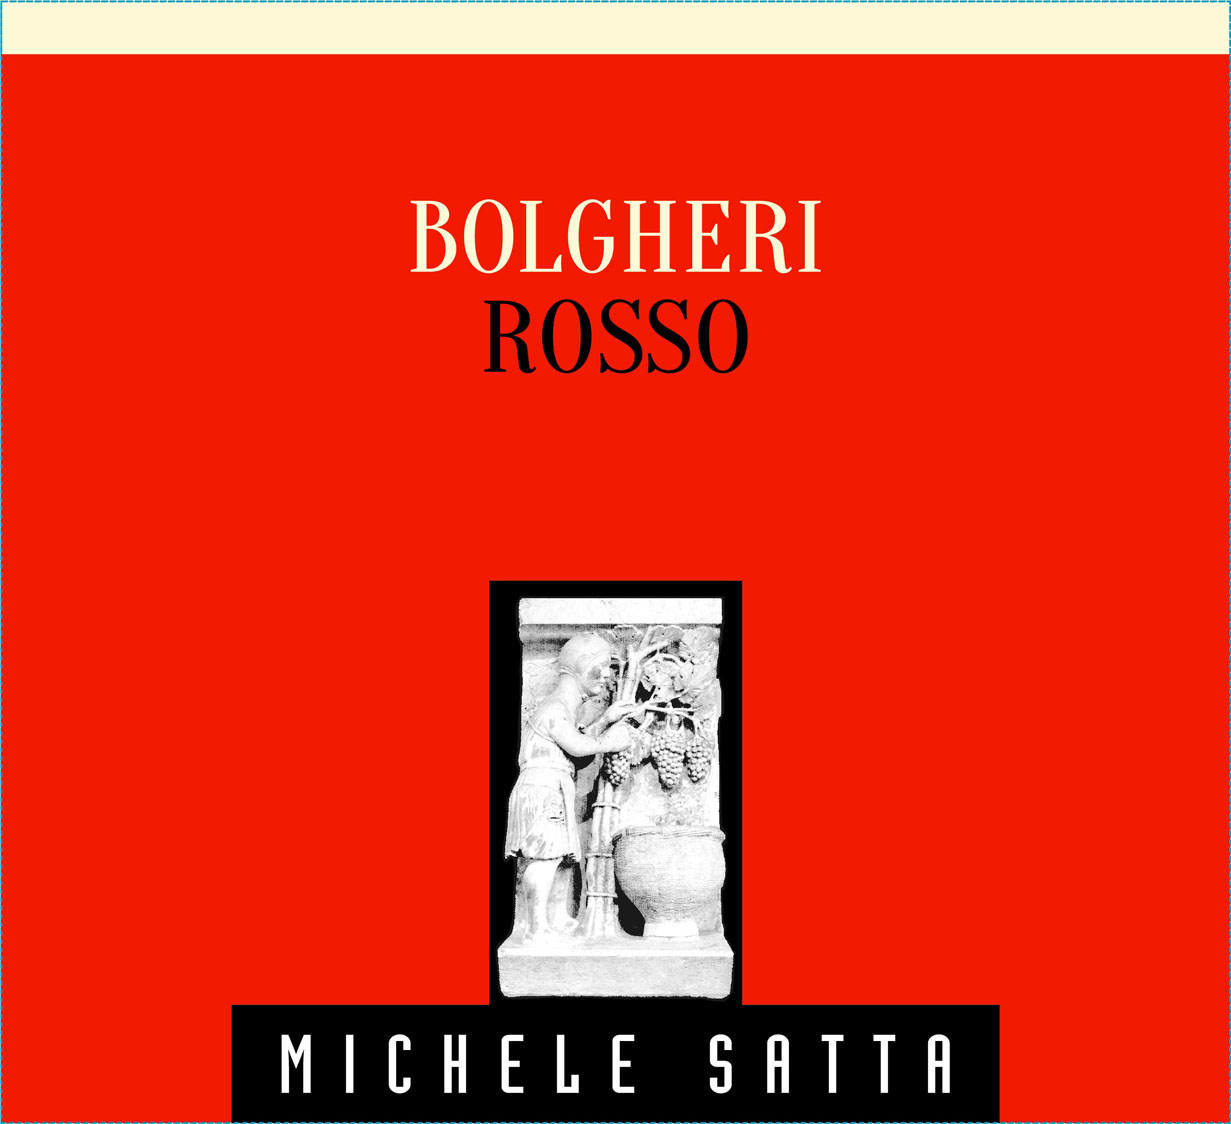 Michele Satta - Bolgheri Rosso label